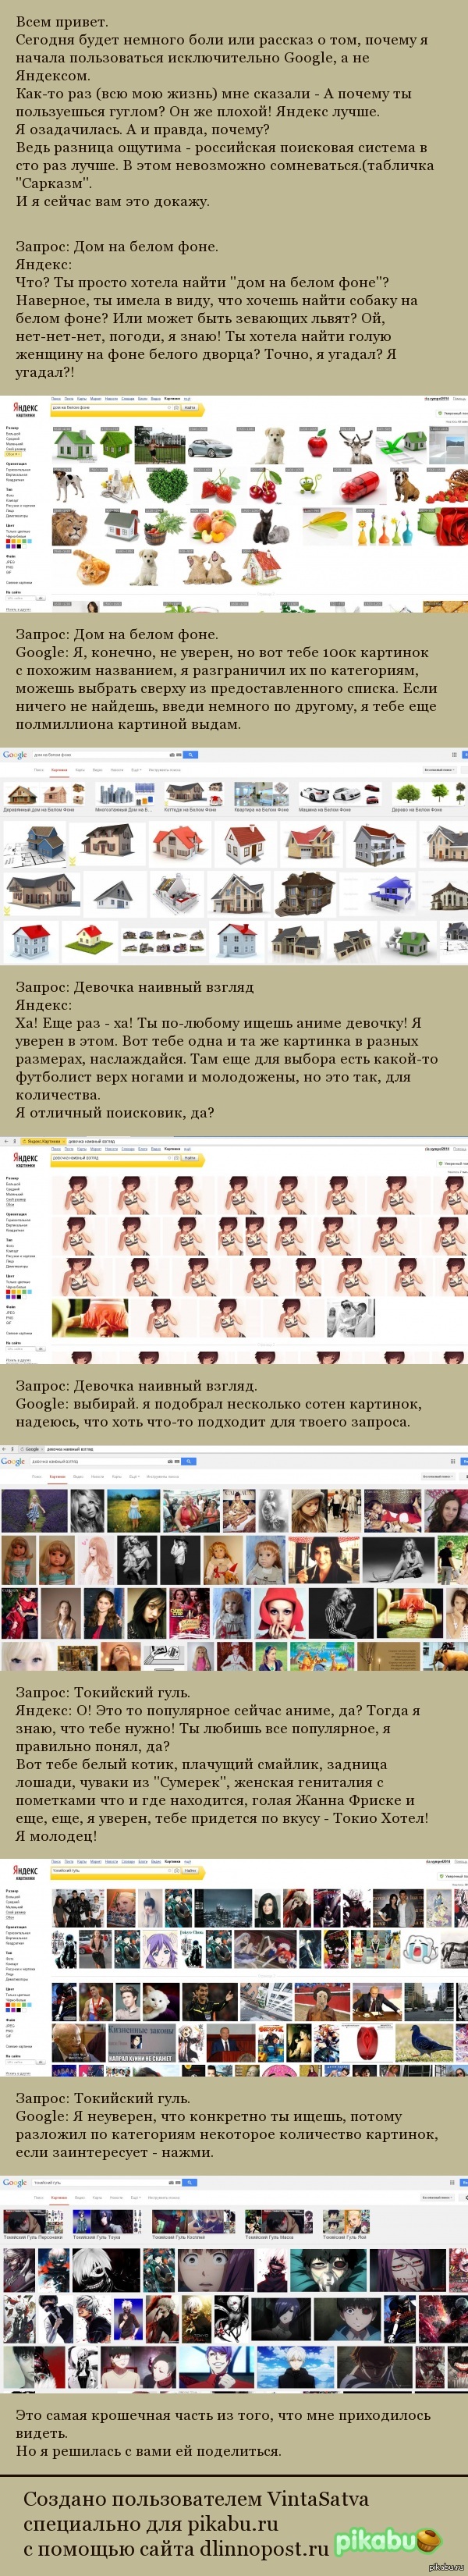 Яндекс vs Google | Пикабу